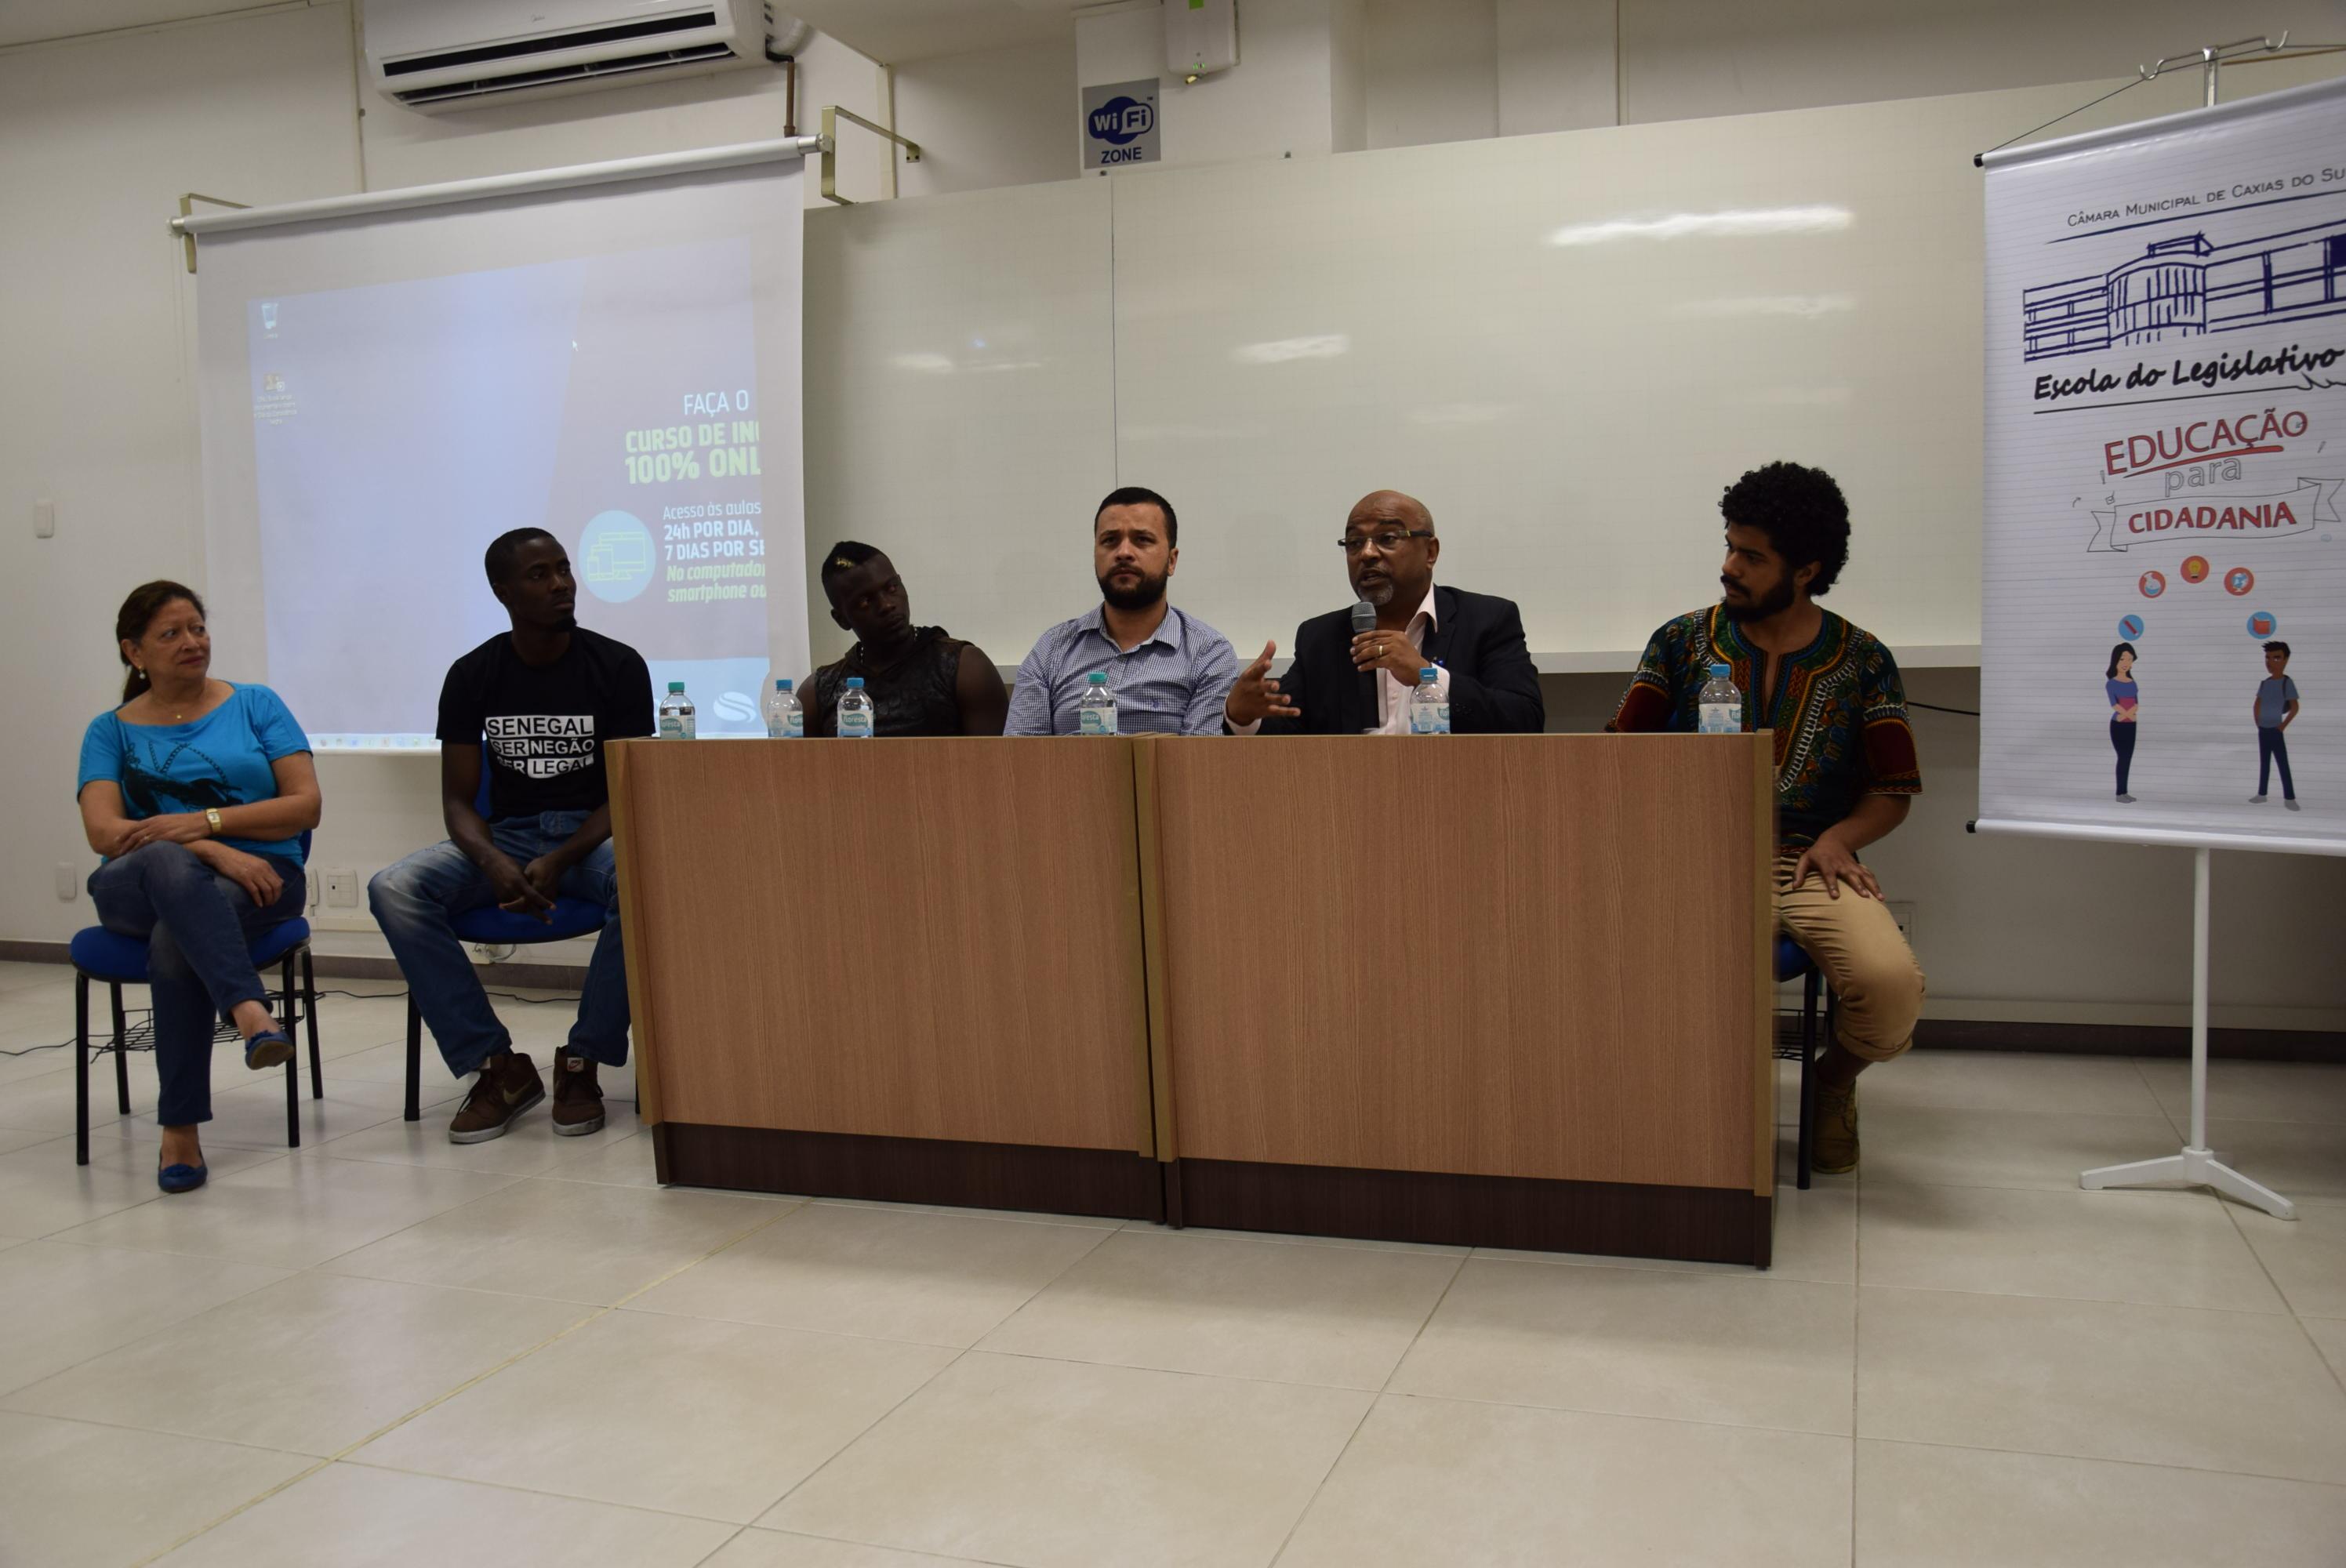 Cine debate coordenado pela Escola do Legislativo mobiliza discussões sobre a população negra em Caxias e no país